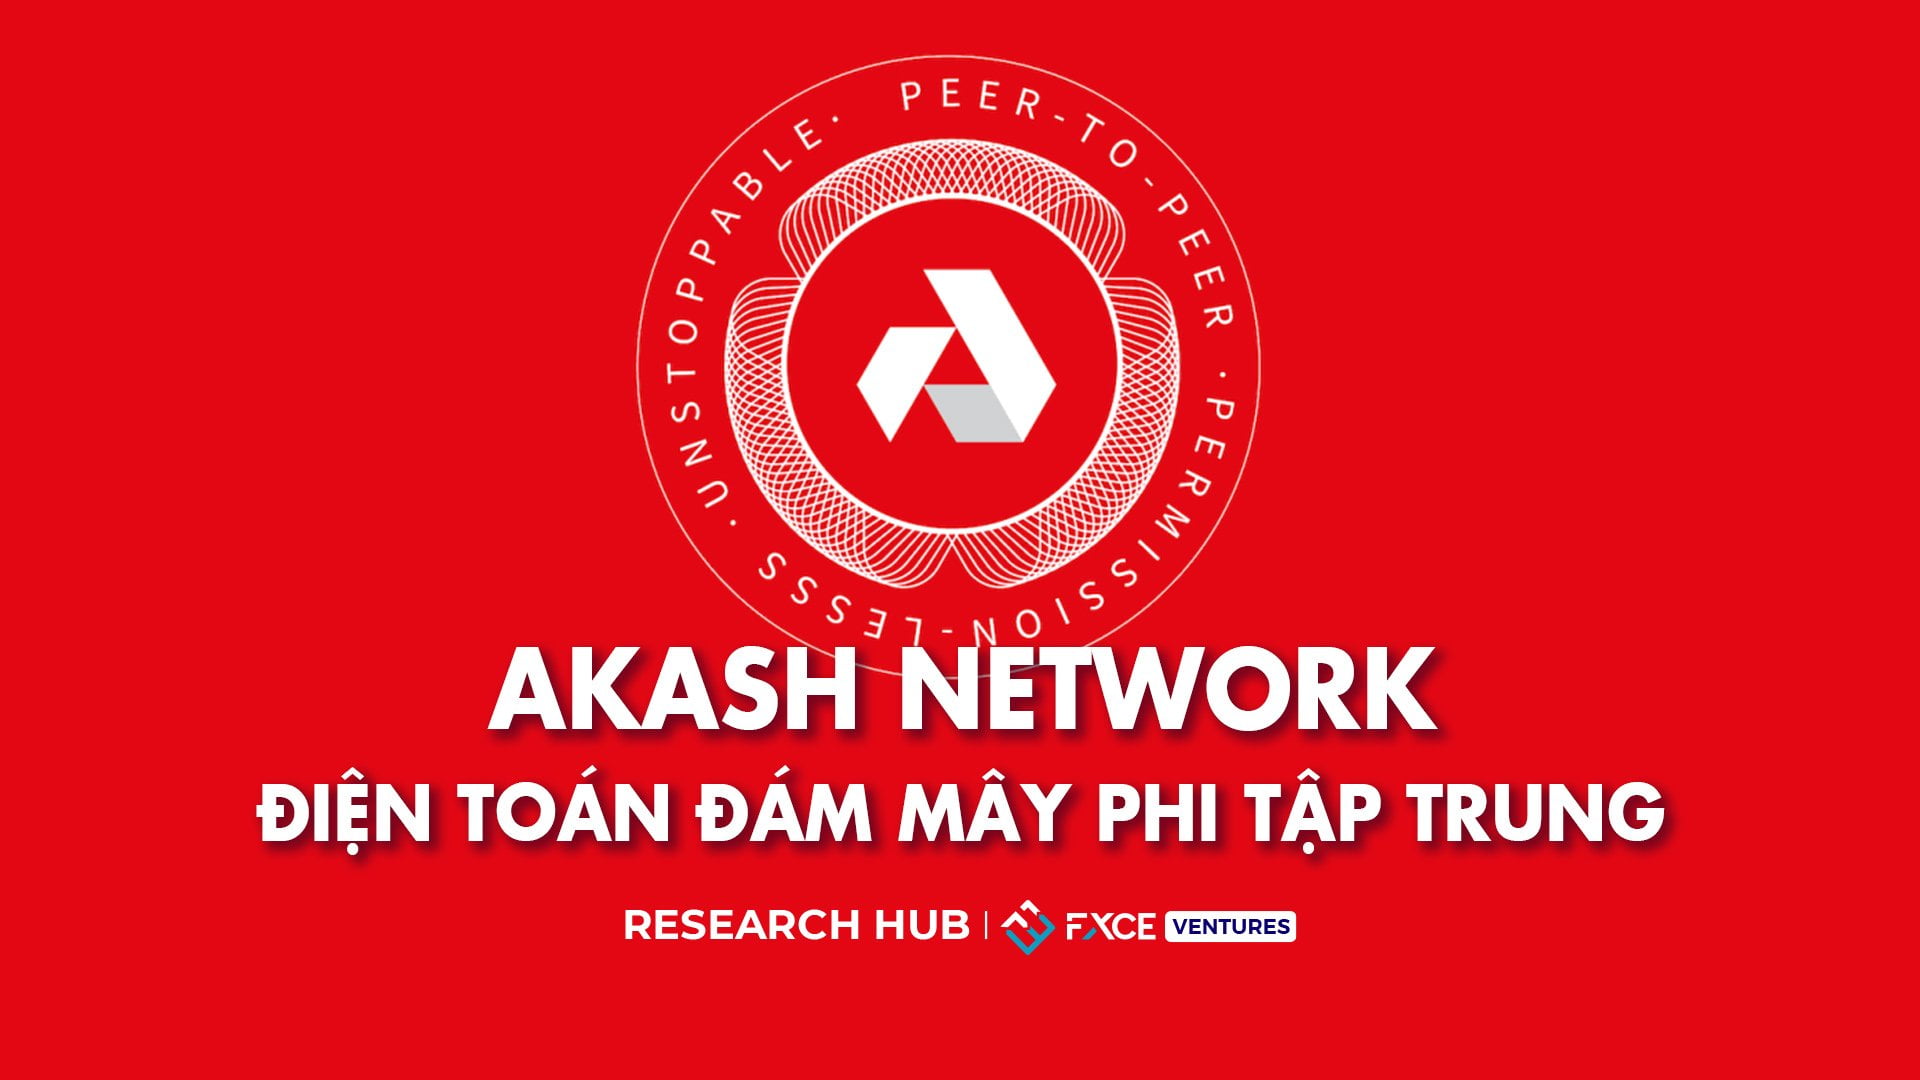 Akash Network là gì? Khám phá điện toán đám mây phi tập trung